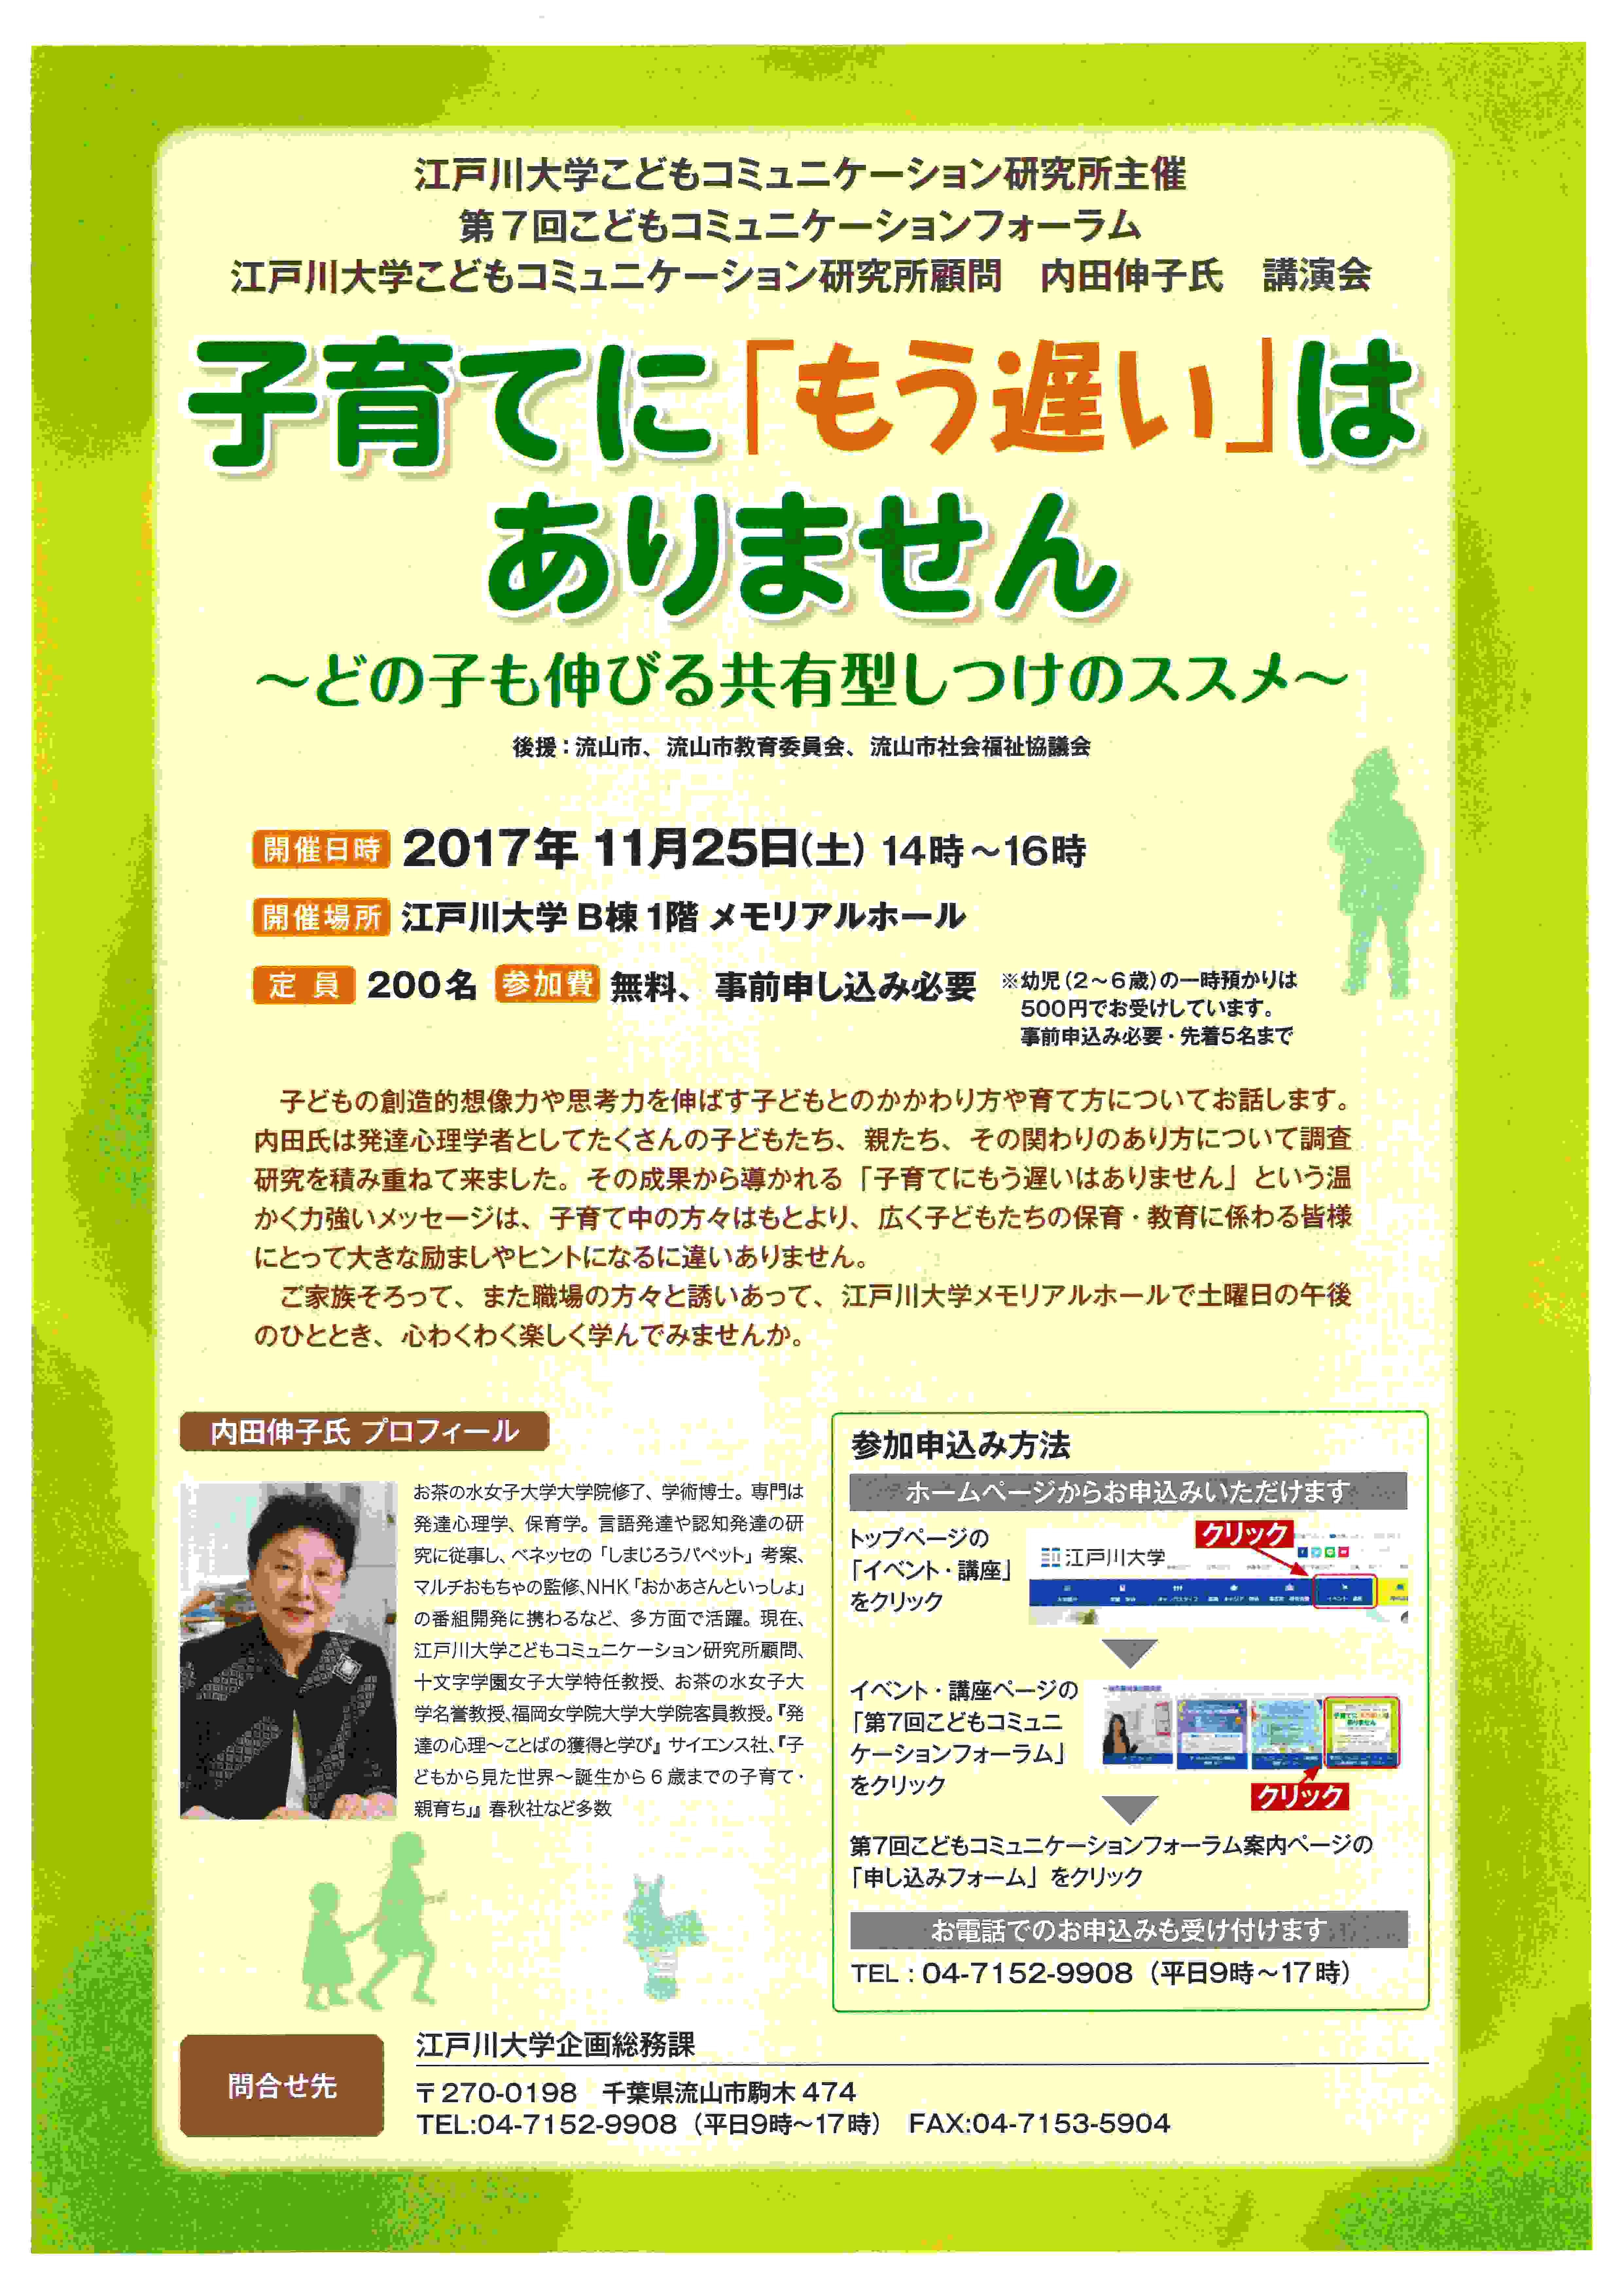 江戸川大学が11月25日に「第7回こどもコミュニケーションフォーラム」を開催 -- 「子育てに『もう遅い』はない」をテーマ --